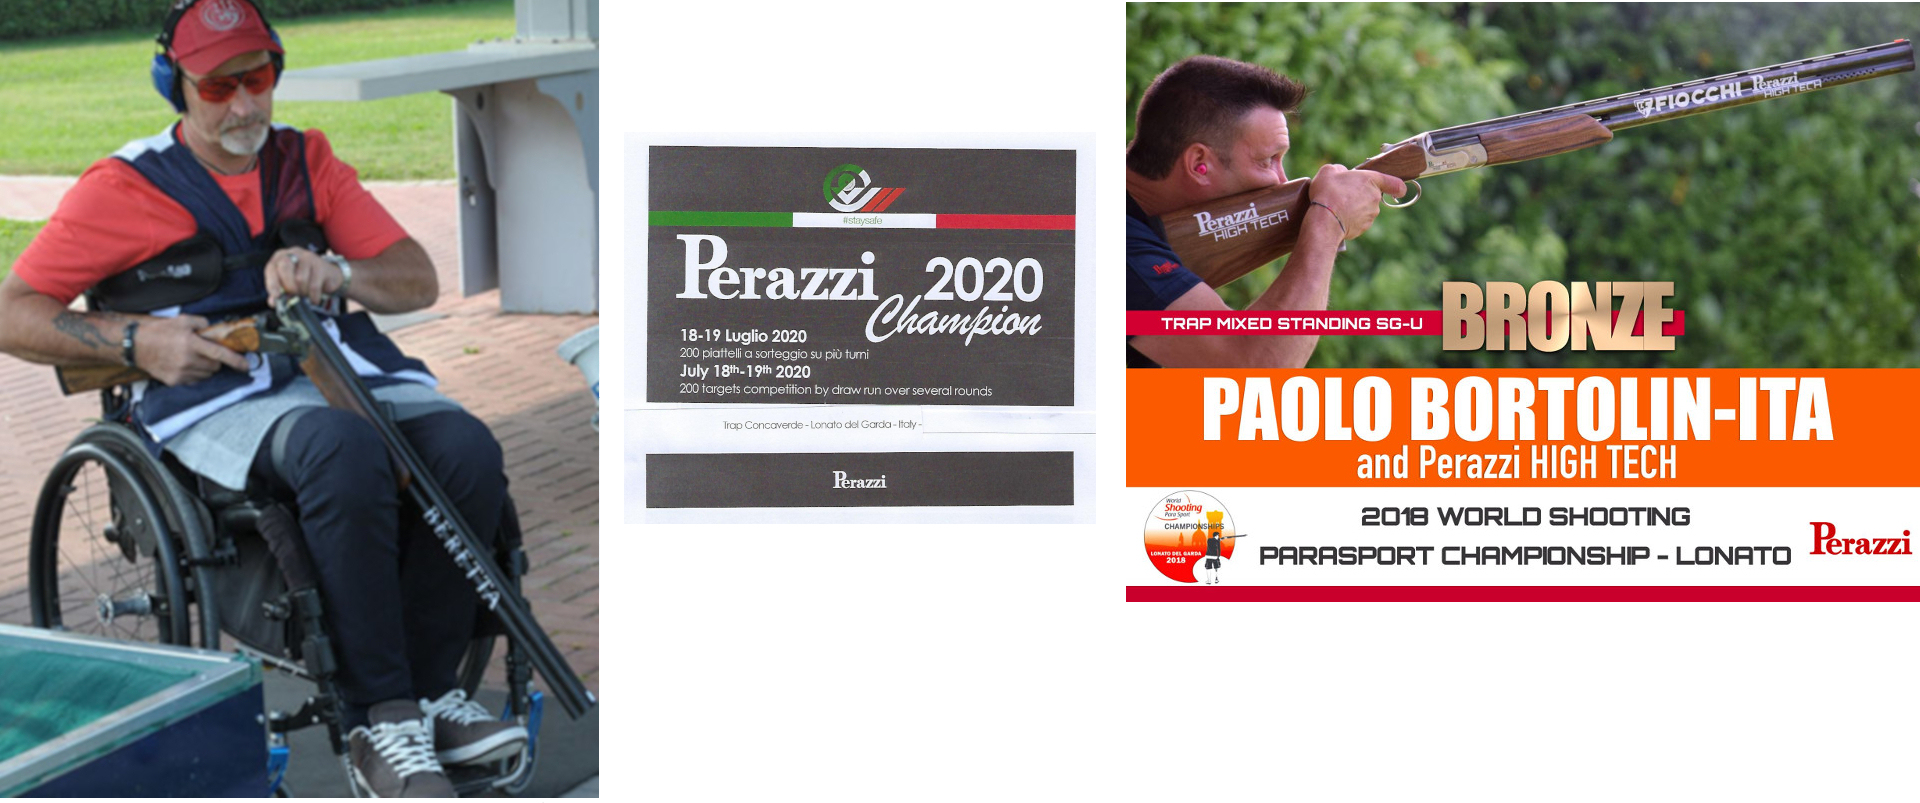 Roberto Menia, Paolo Bortolin, Gran mondiale Perazzi 2020